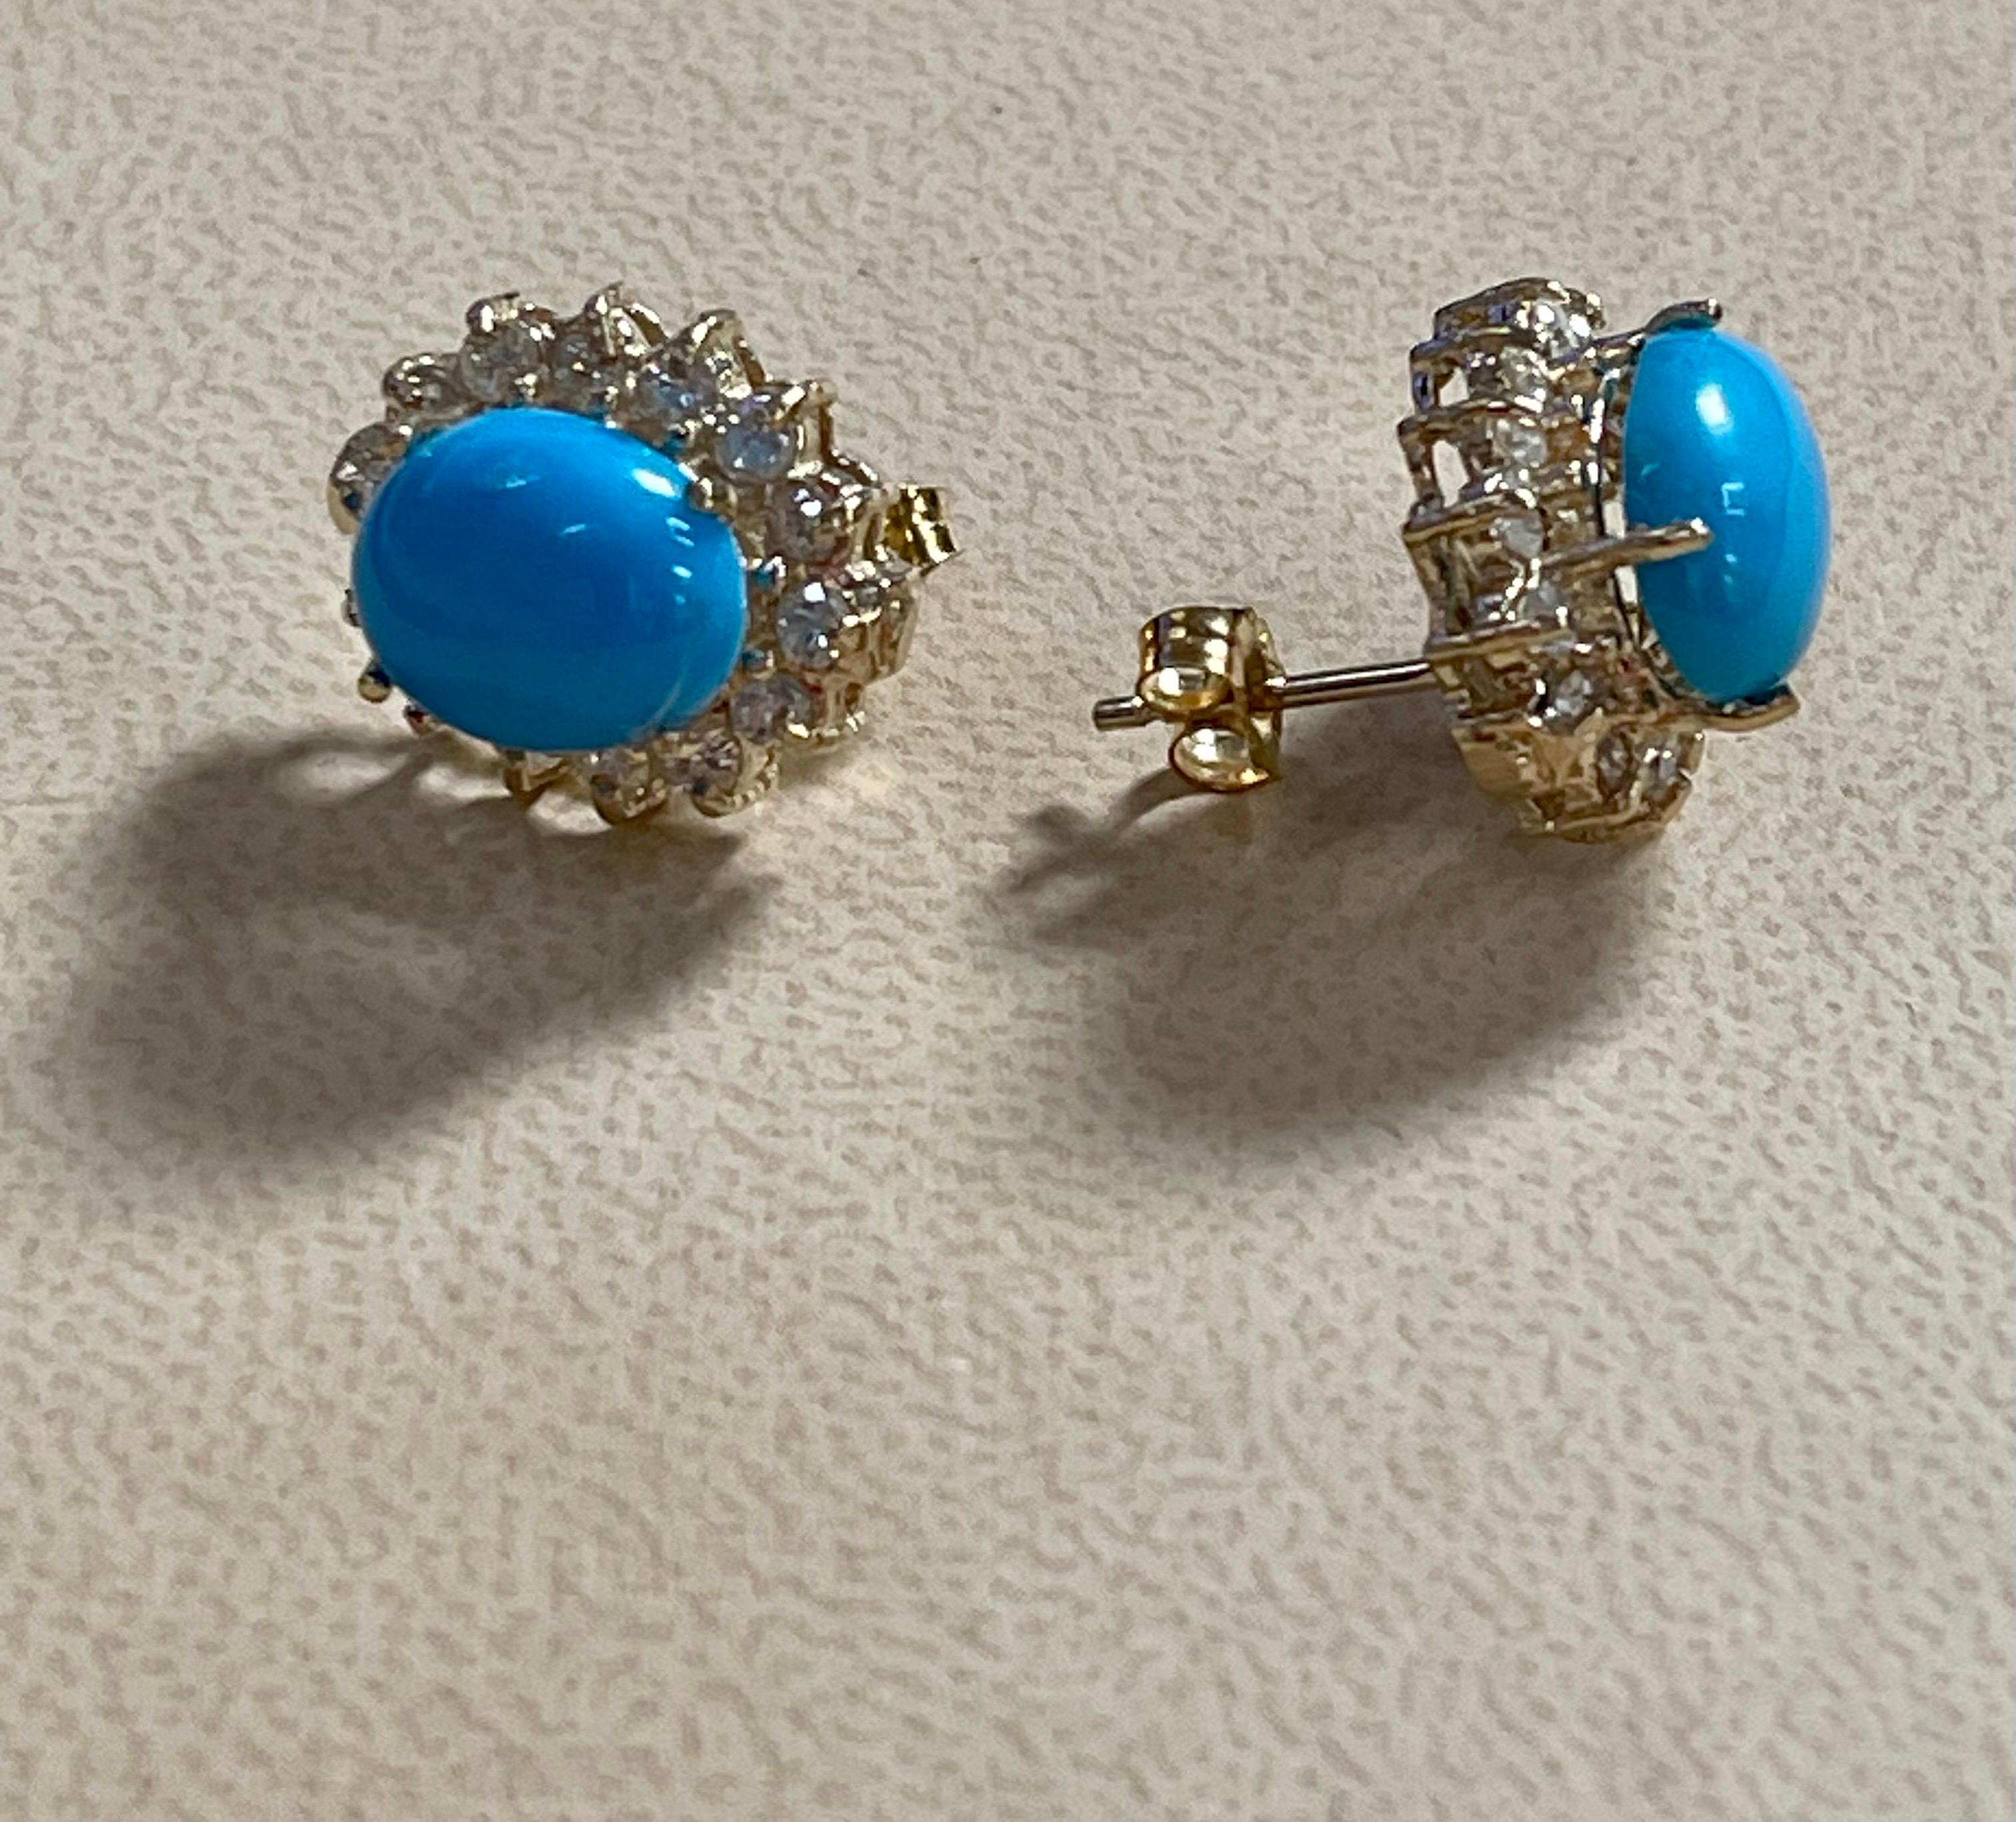 1.5 carat earrings